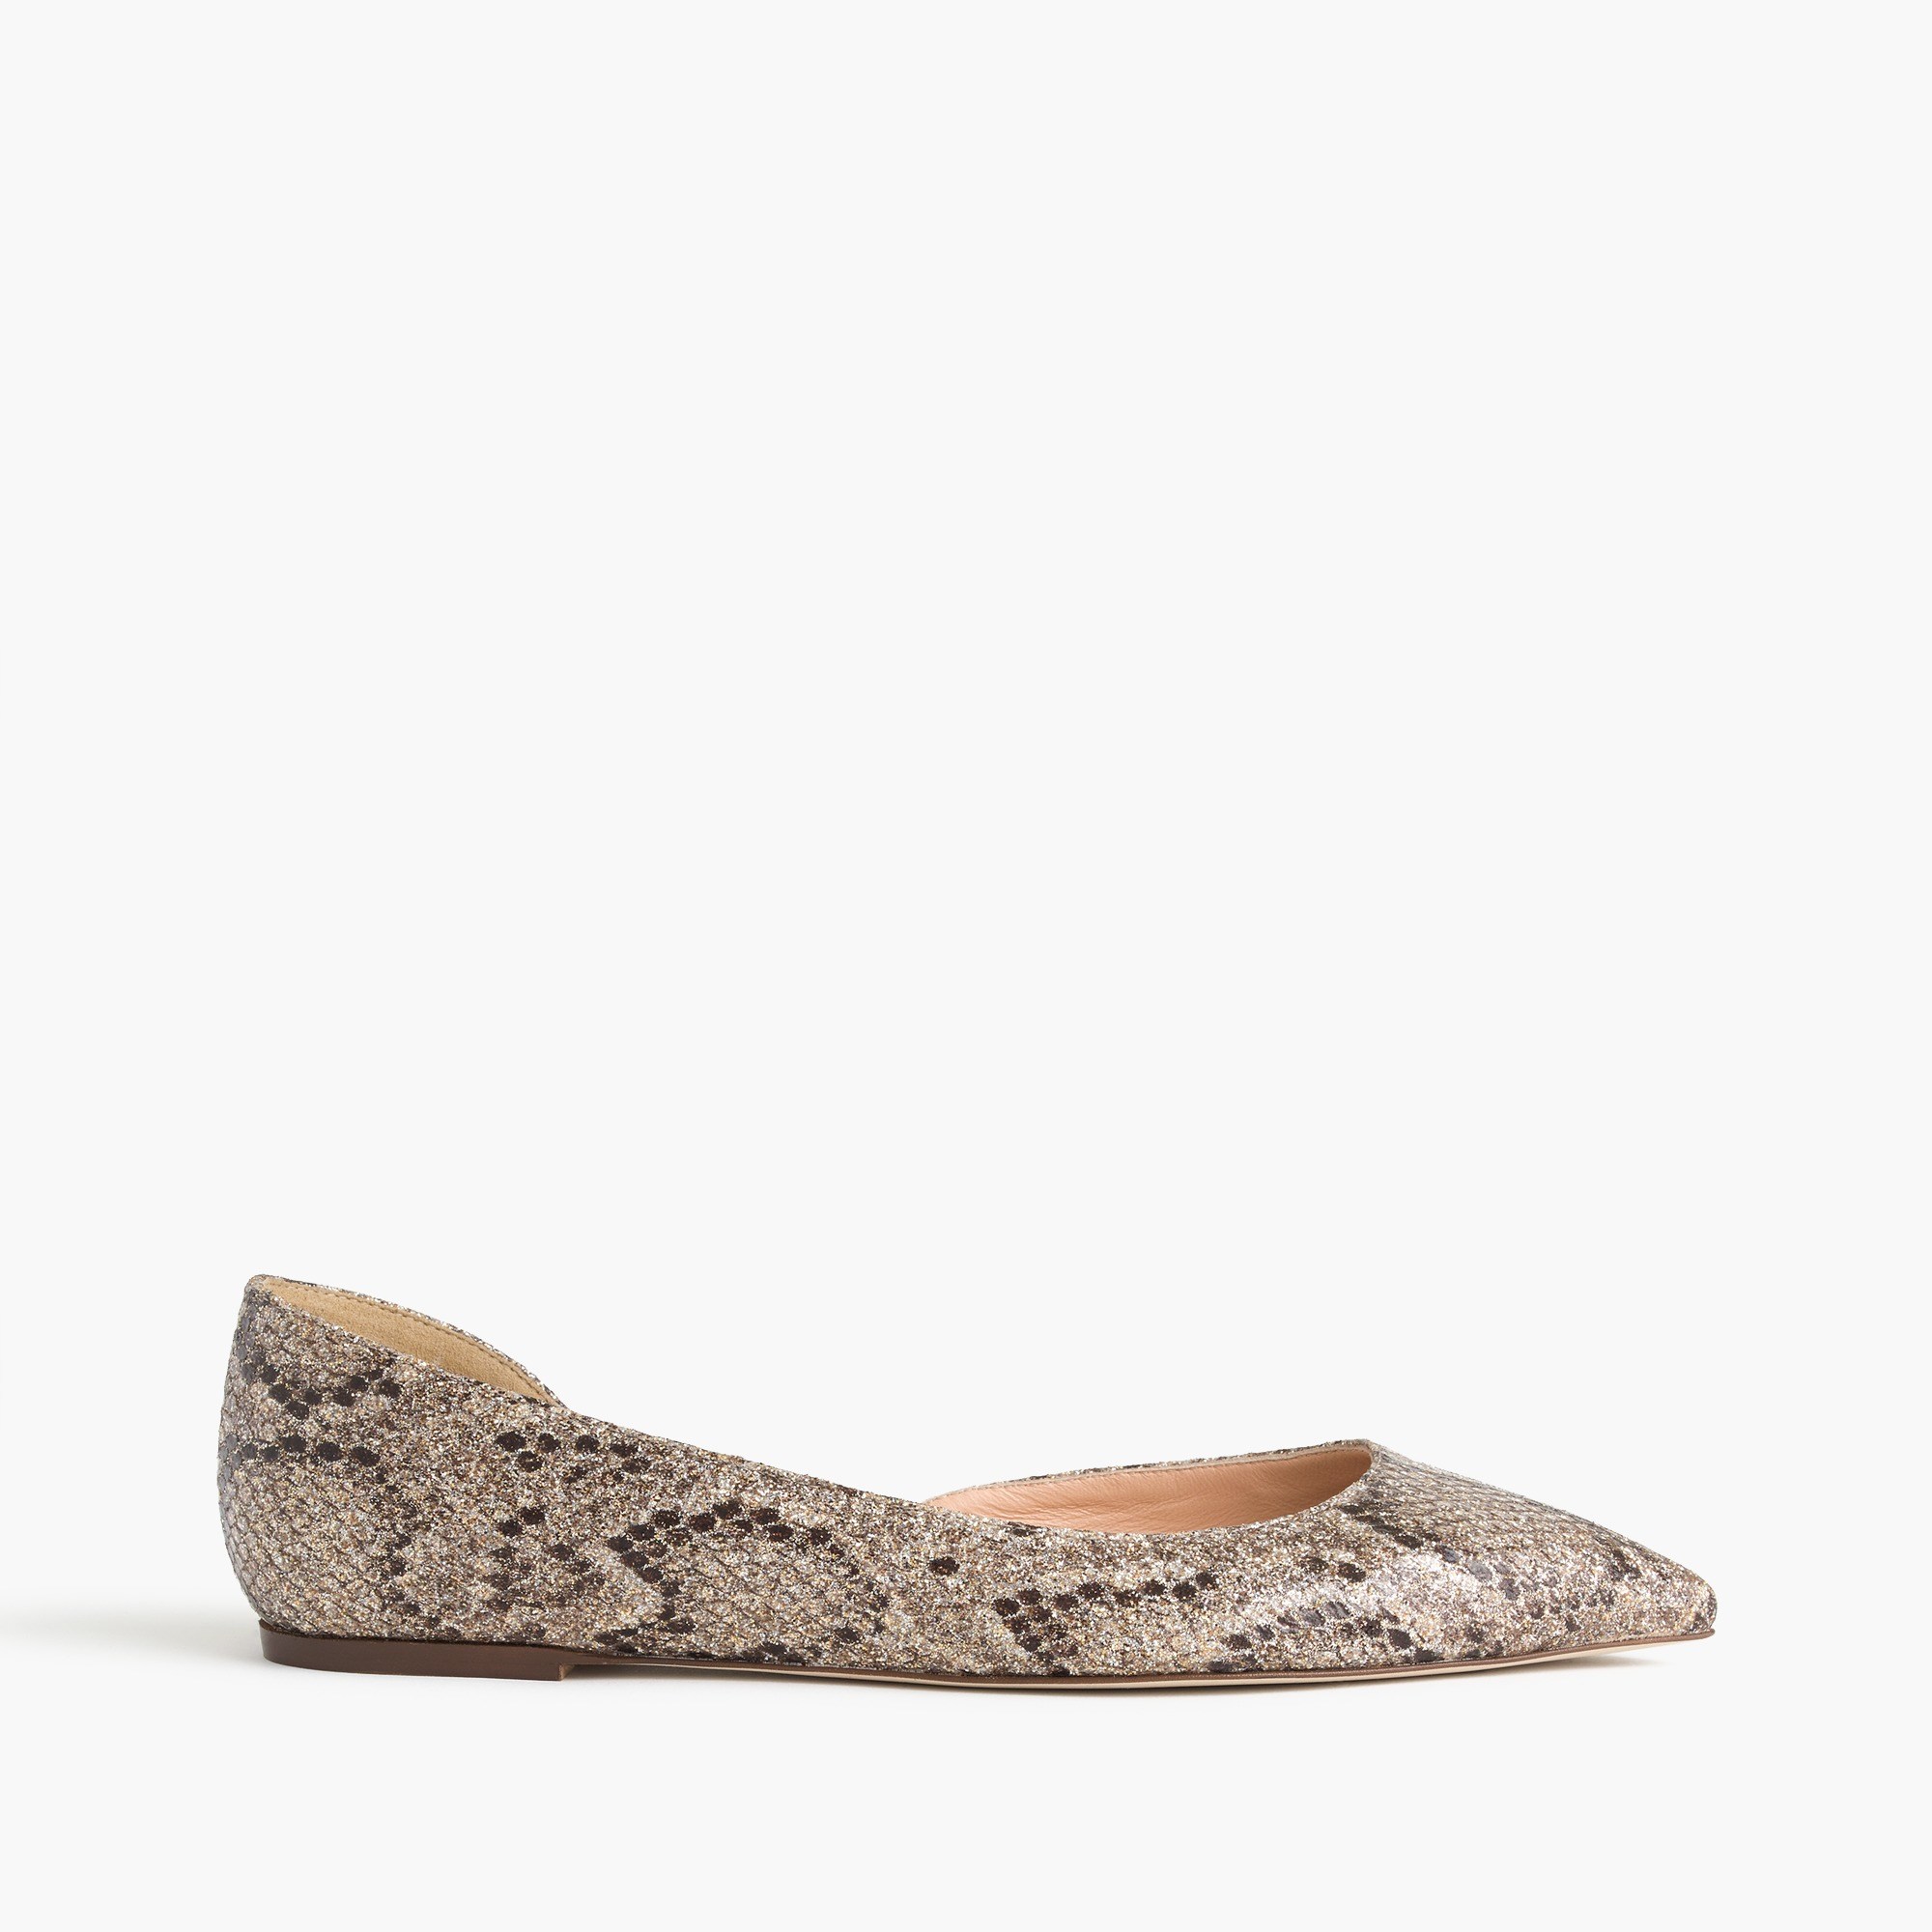 Audrey glitter flats : Women shoes | J.Crew